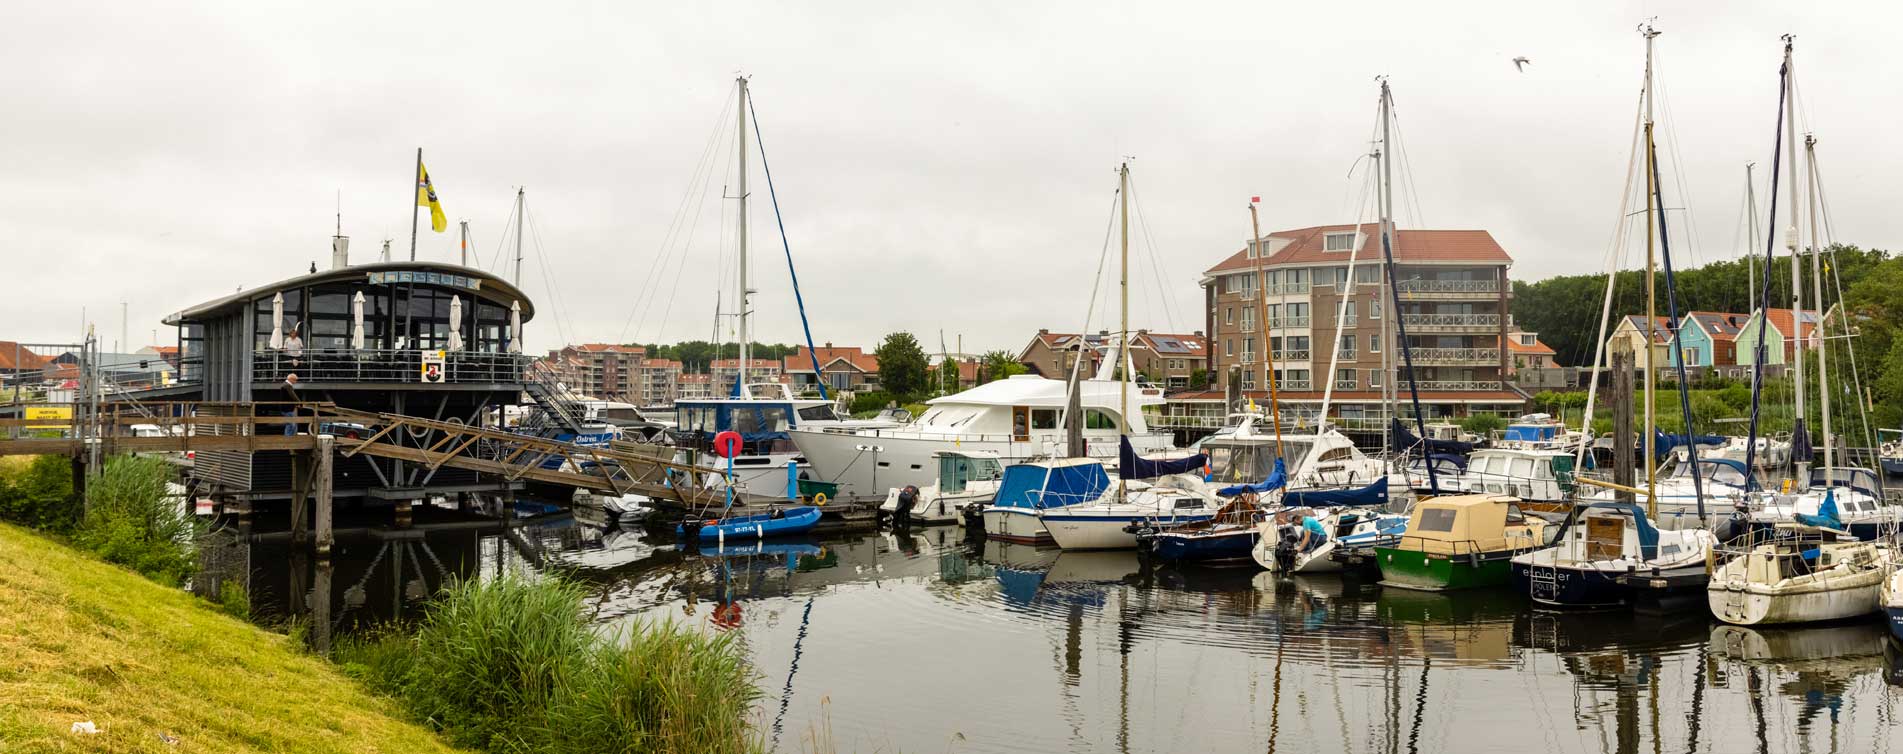 Zeilboten in de haven van Tholen - Overbeeke